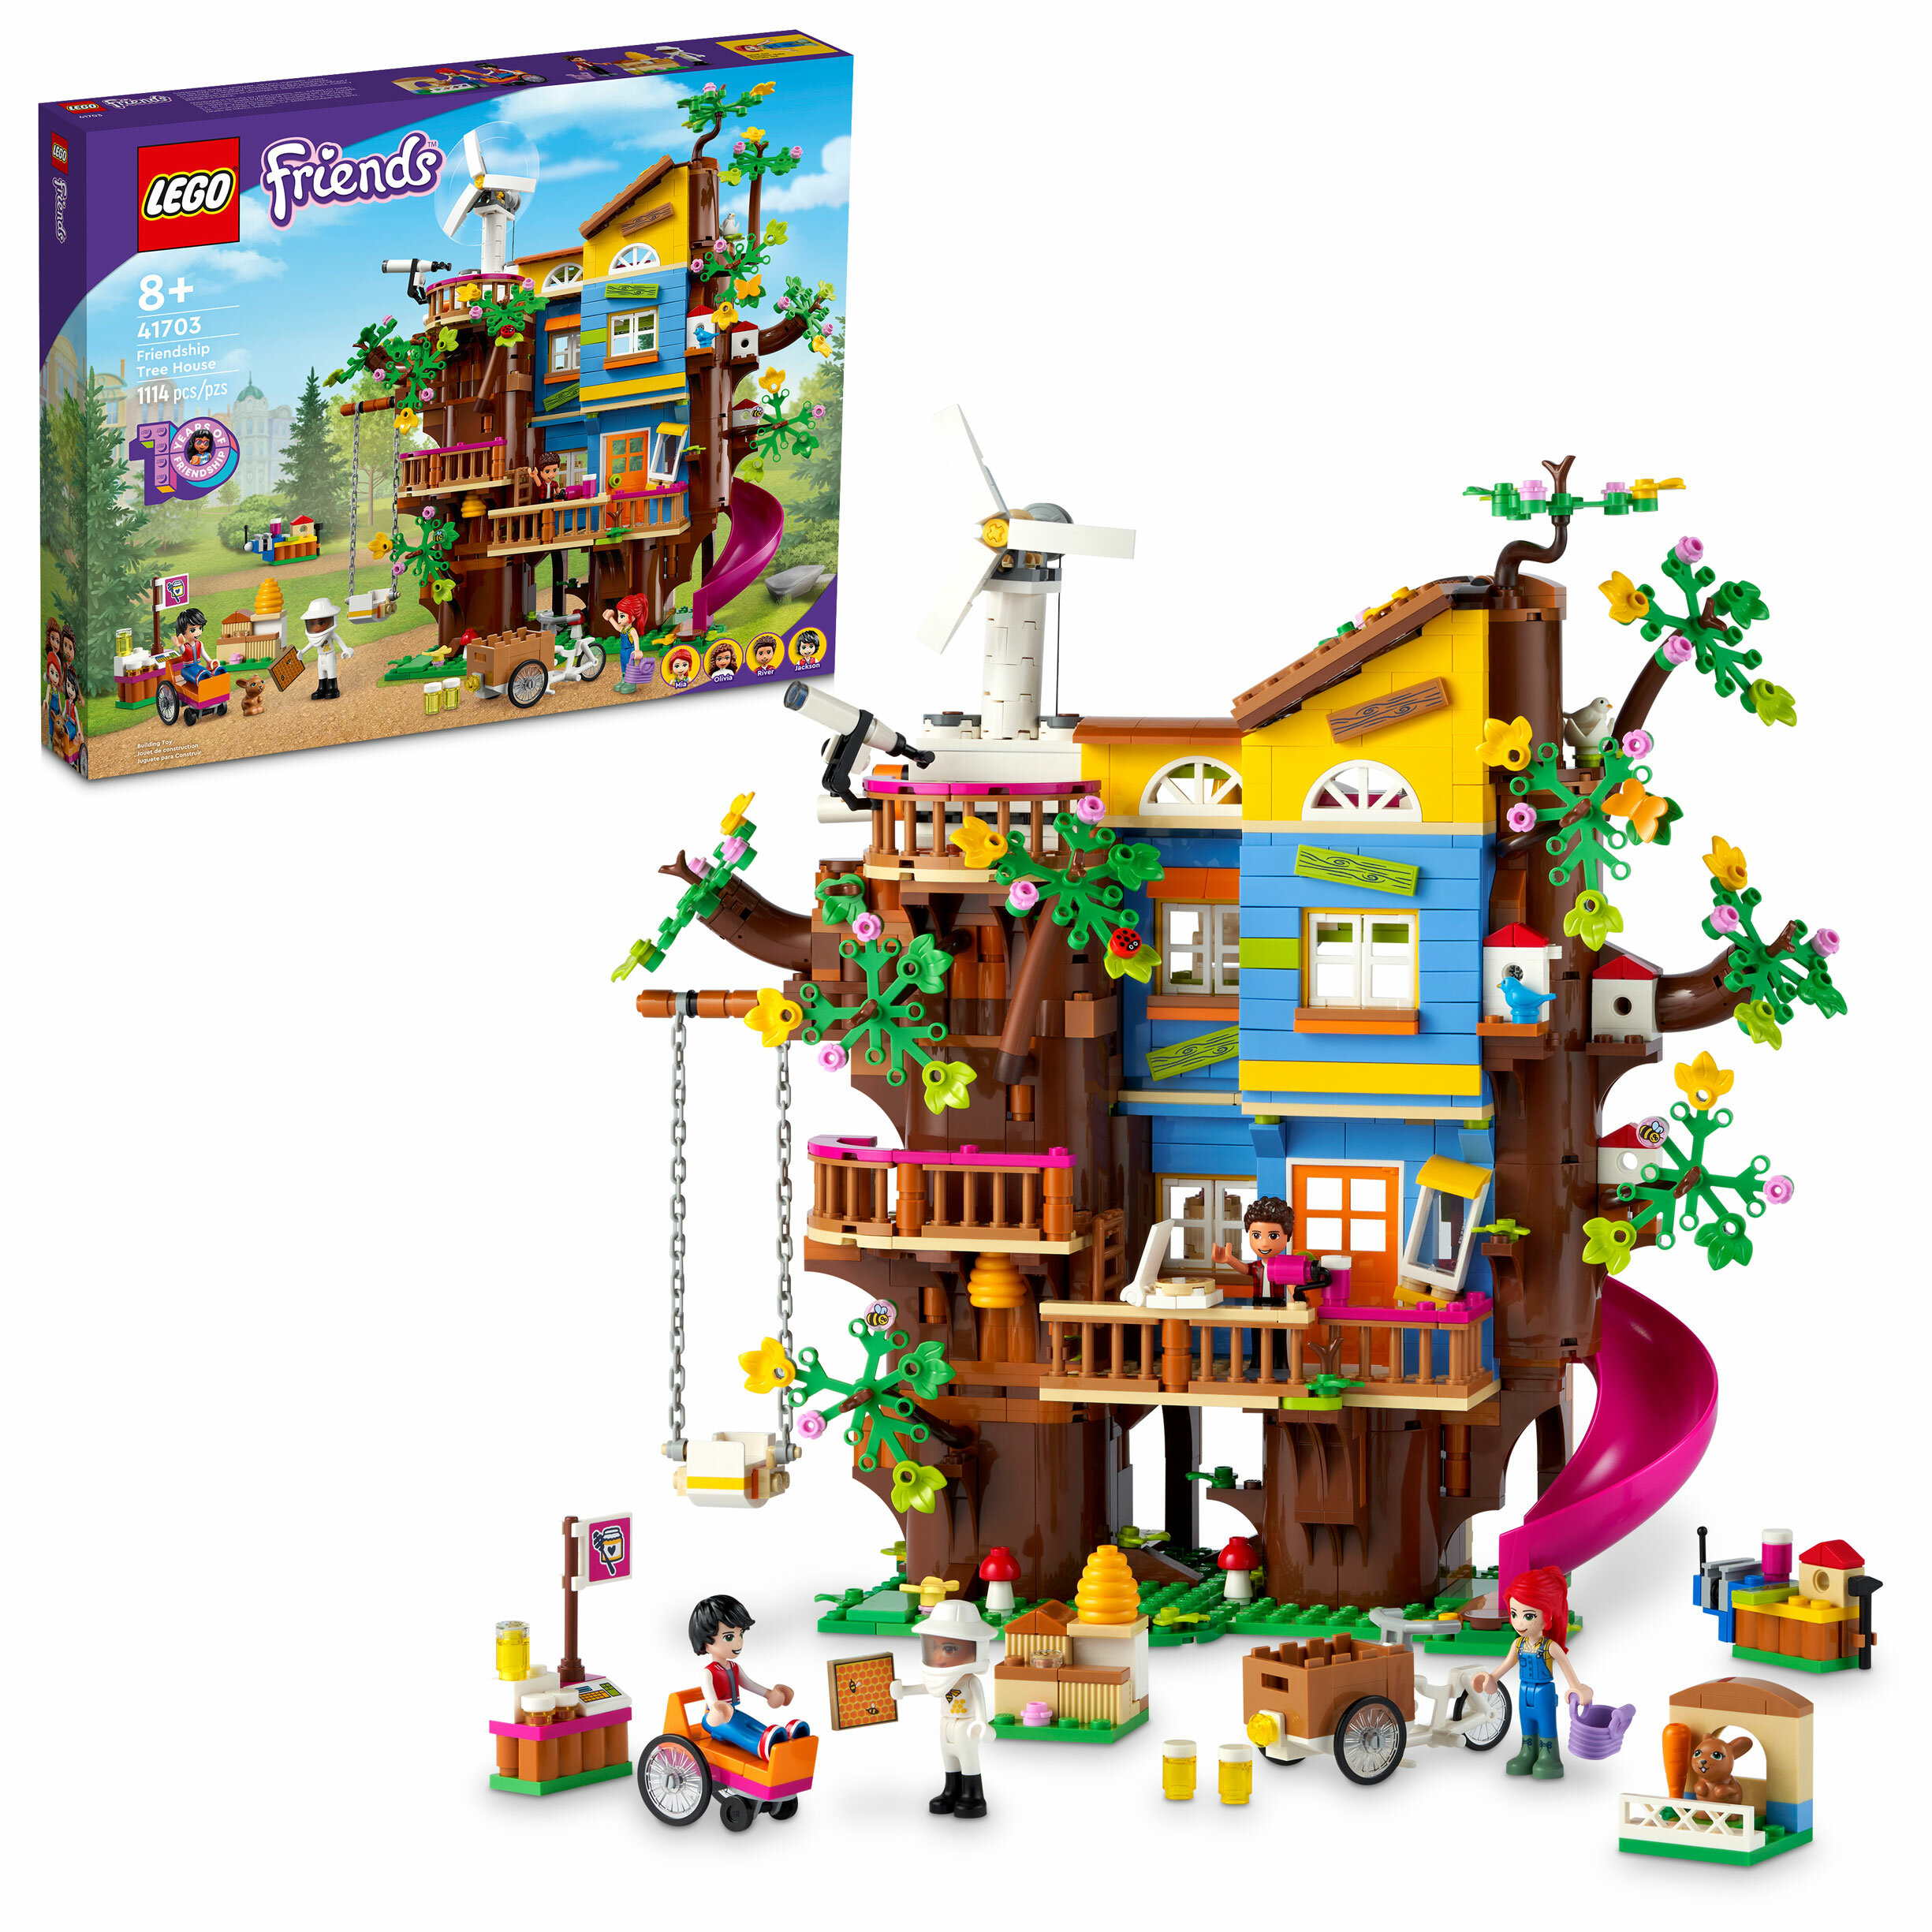 Конструктор LEGO Дом друзей на дереве (41703)